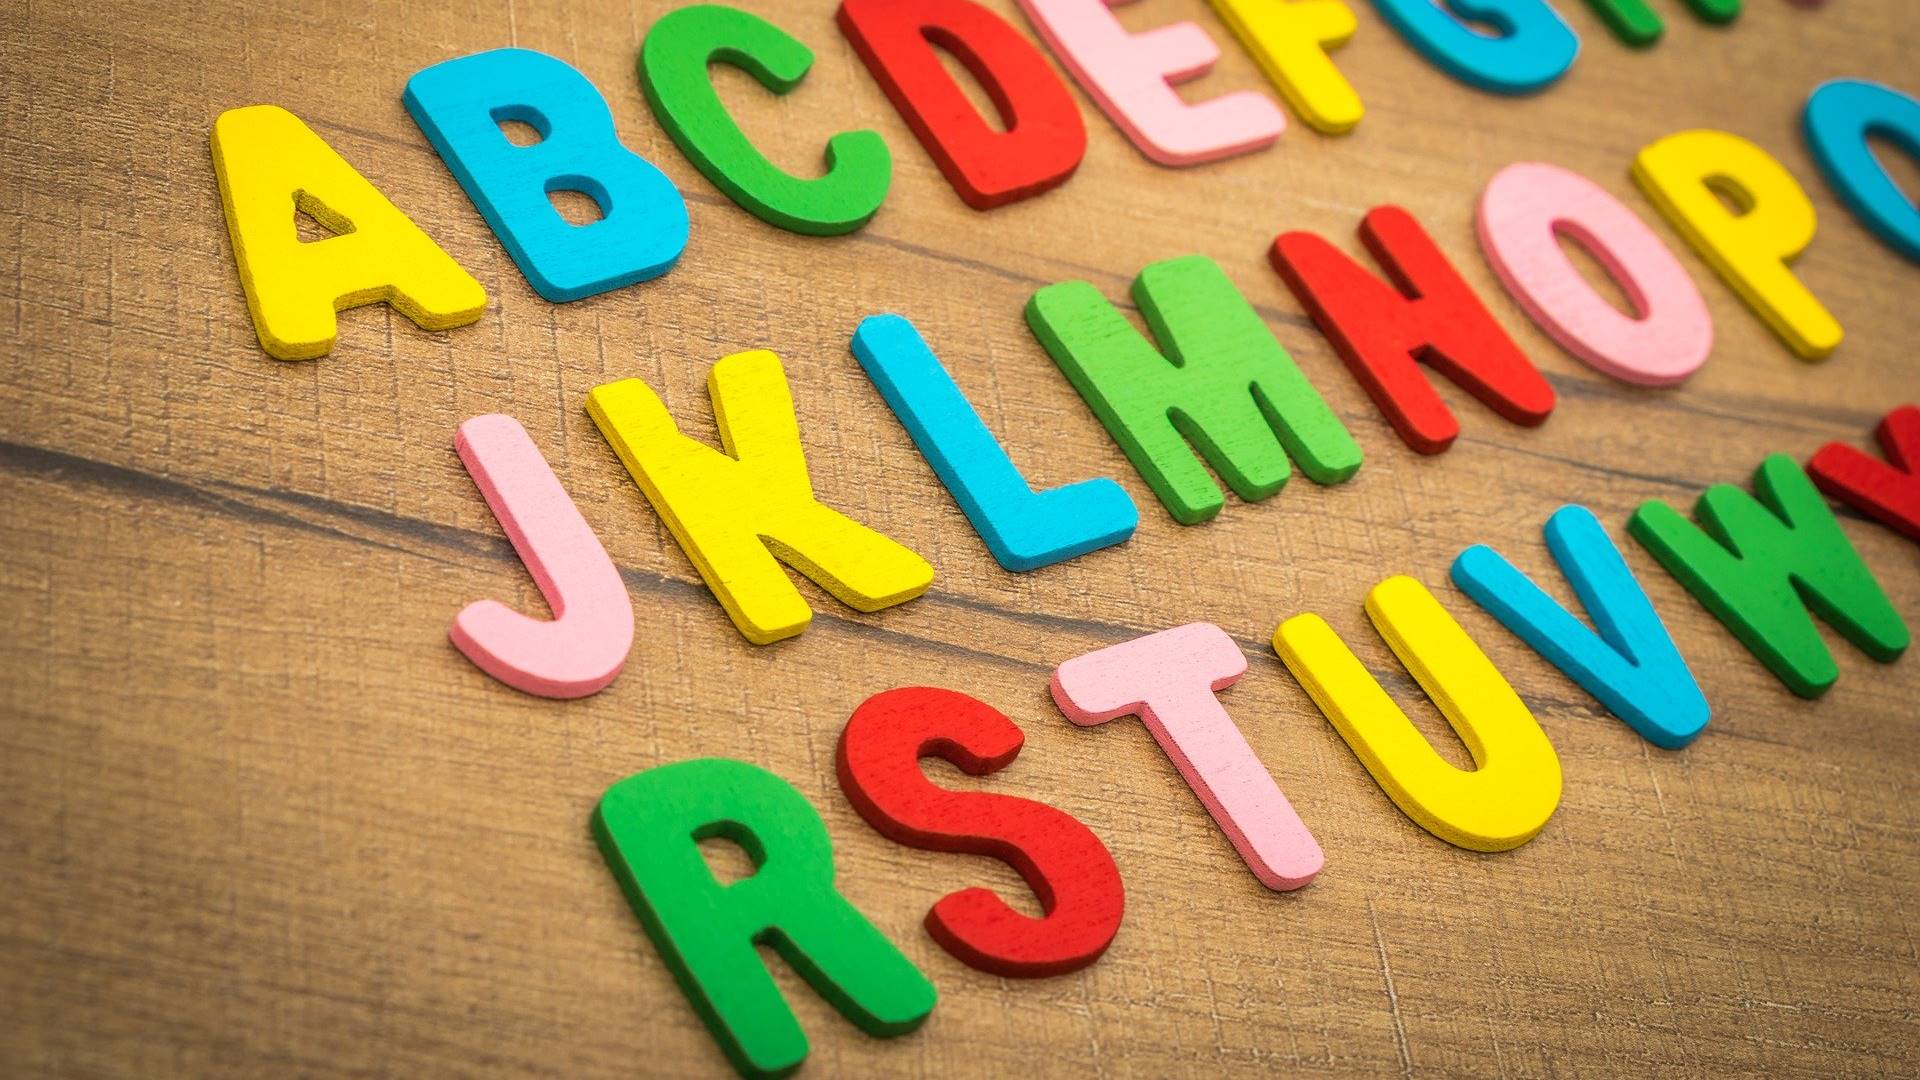 Hölzerne bunte Buchstaben sind alphabetisch in drei Zeilen auf einem Stück Holz aufgereiht. Die Buchstaben sind Gelb, Blau, Grün, Rot und Rosa gefärbt.